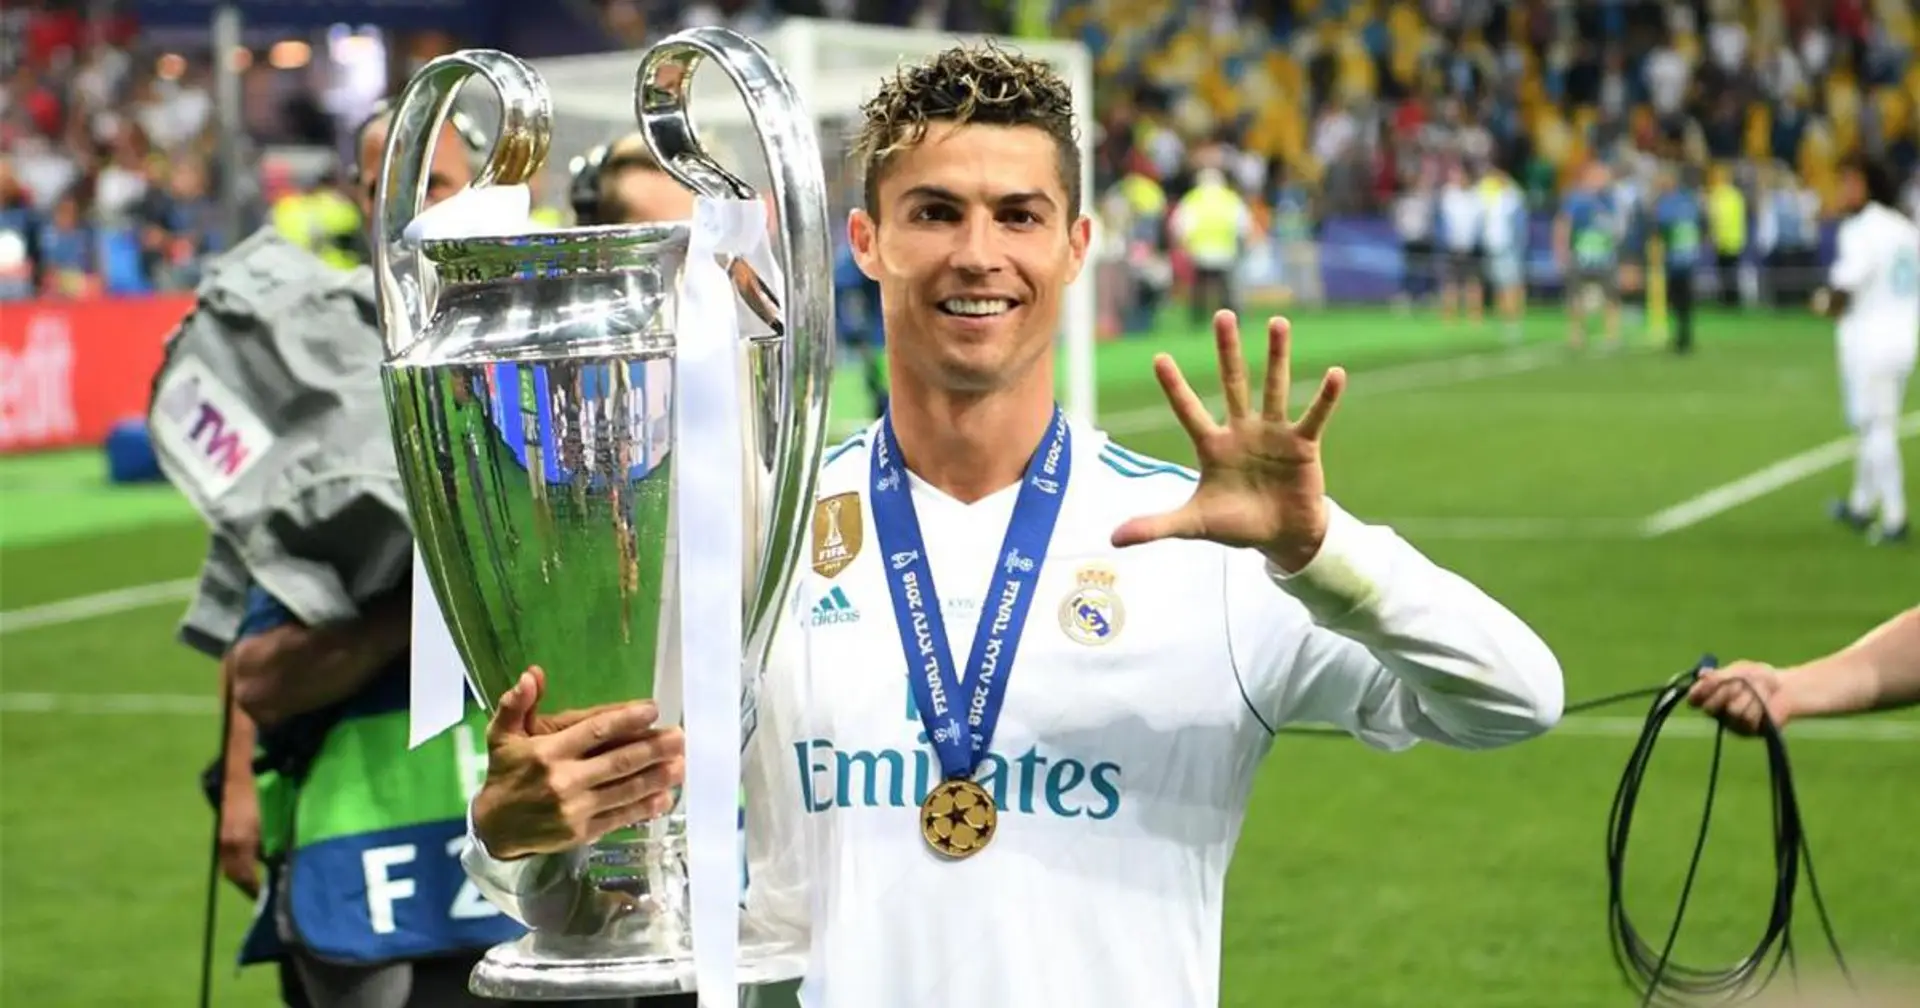 'Busco la perfección': algunos de los actuales jugadores del Madrid deberían aprender de Cristiano. Su filosofía en 3 frases